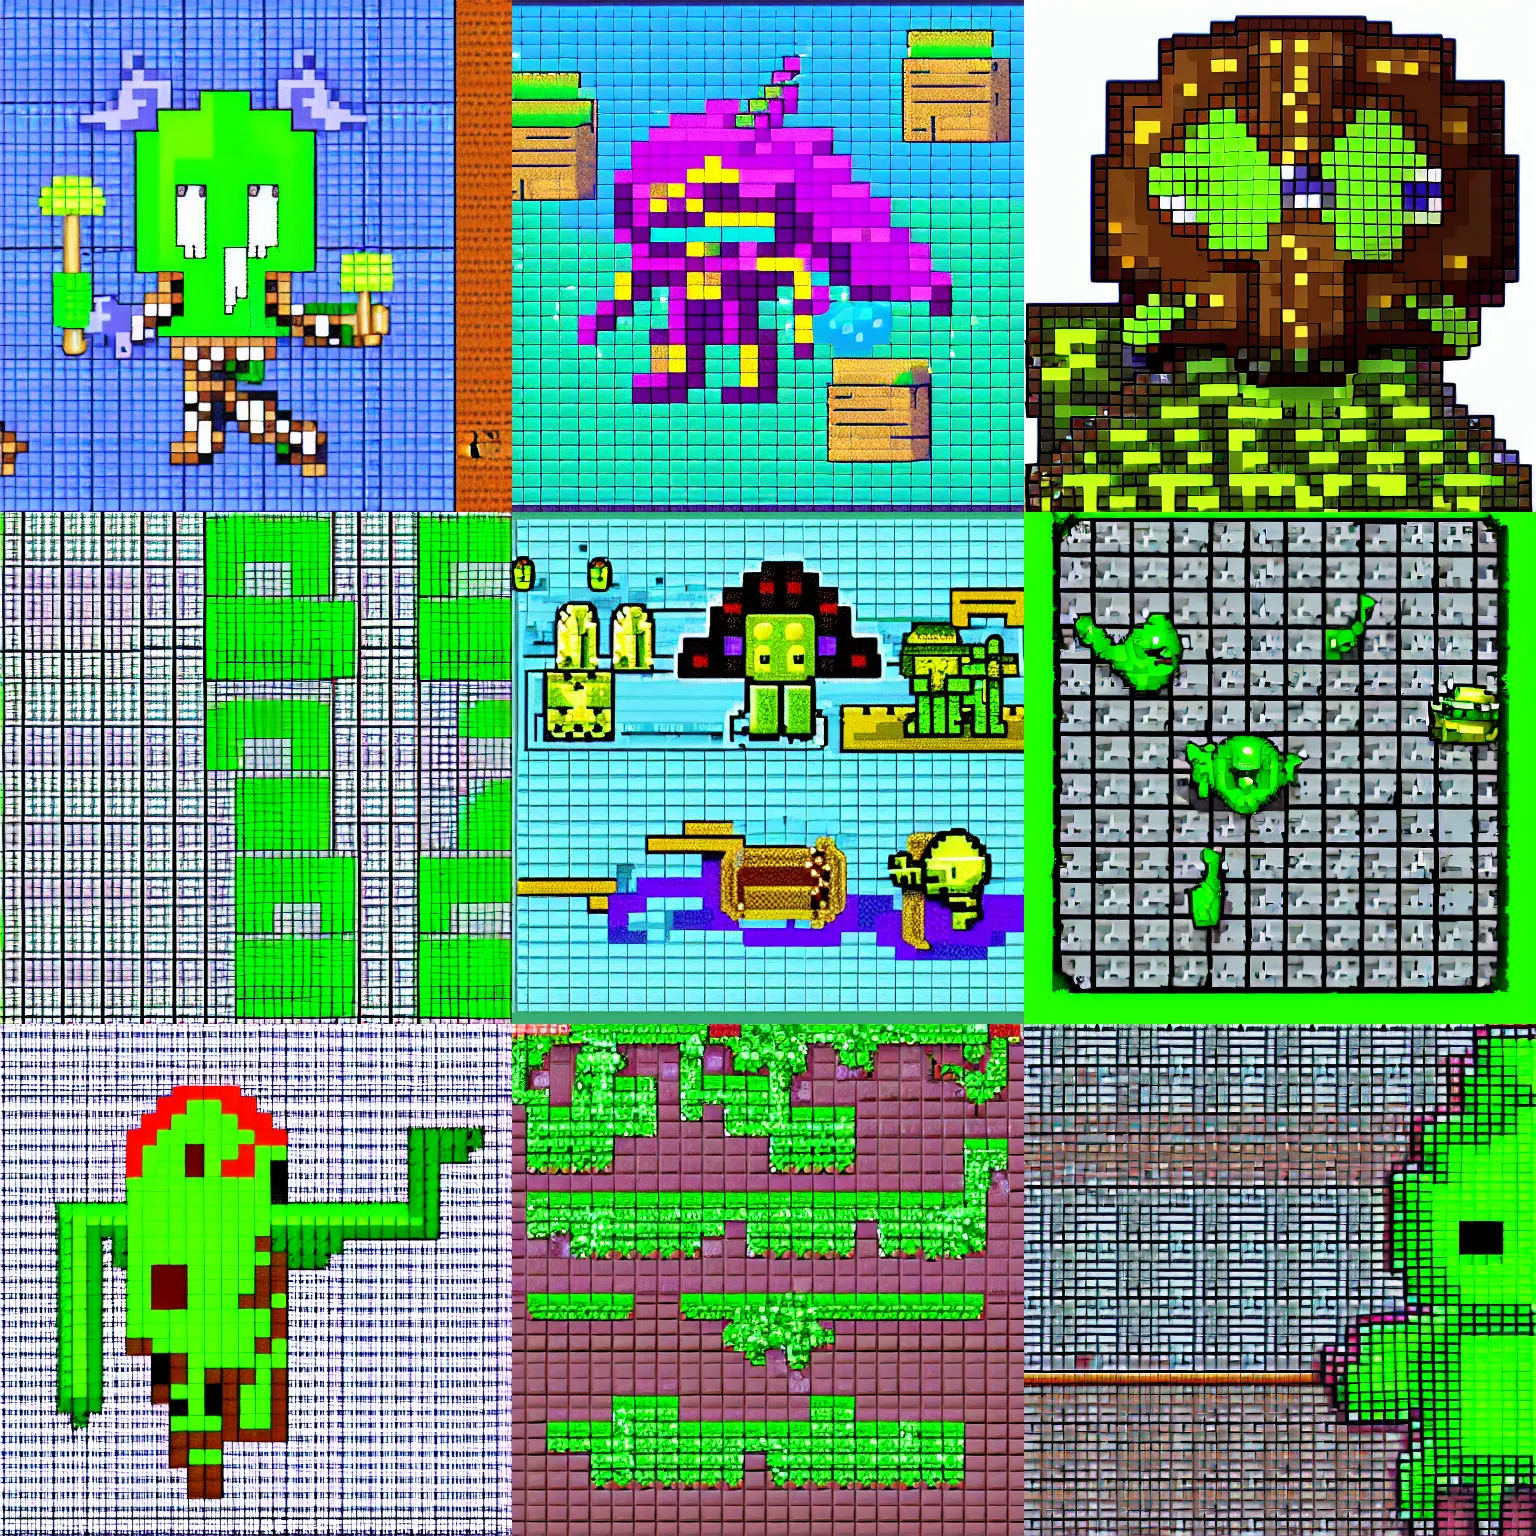 Prompt: rpg slime enemy, pixel art sprite